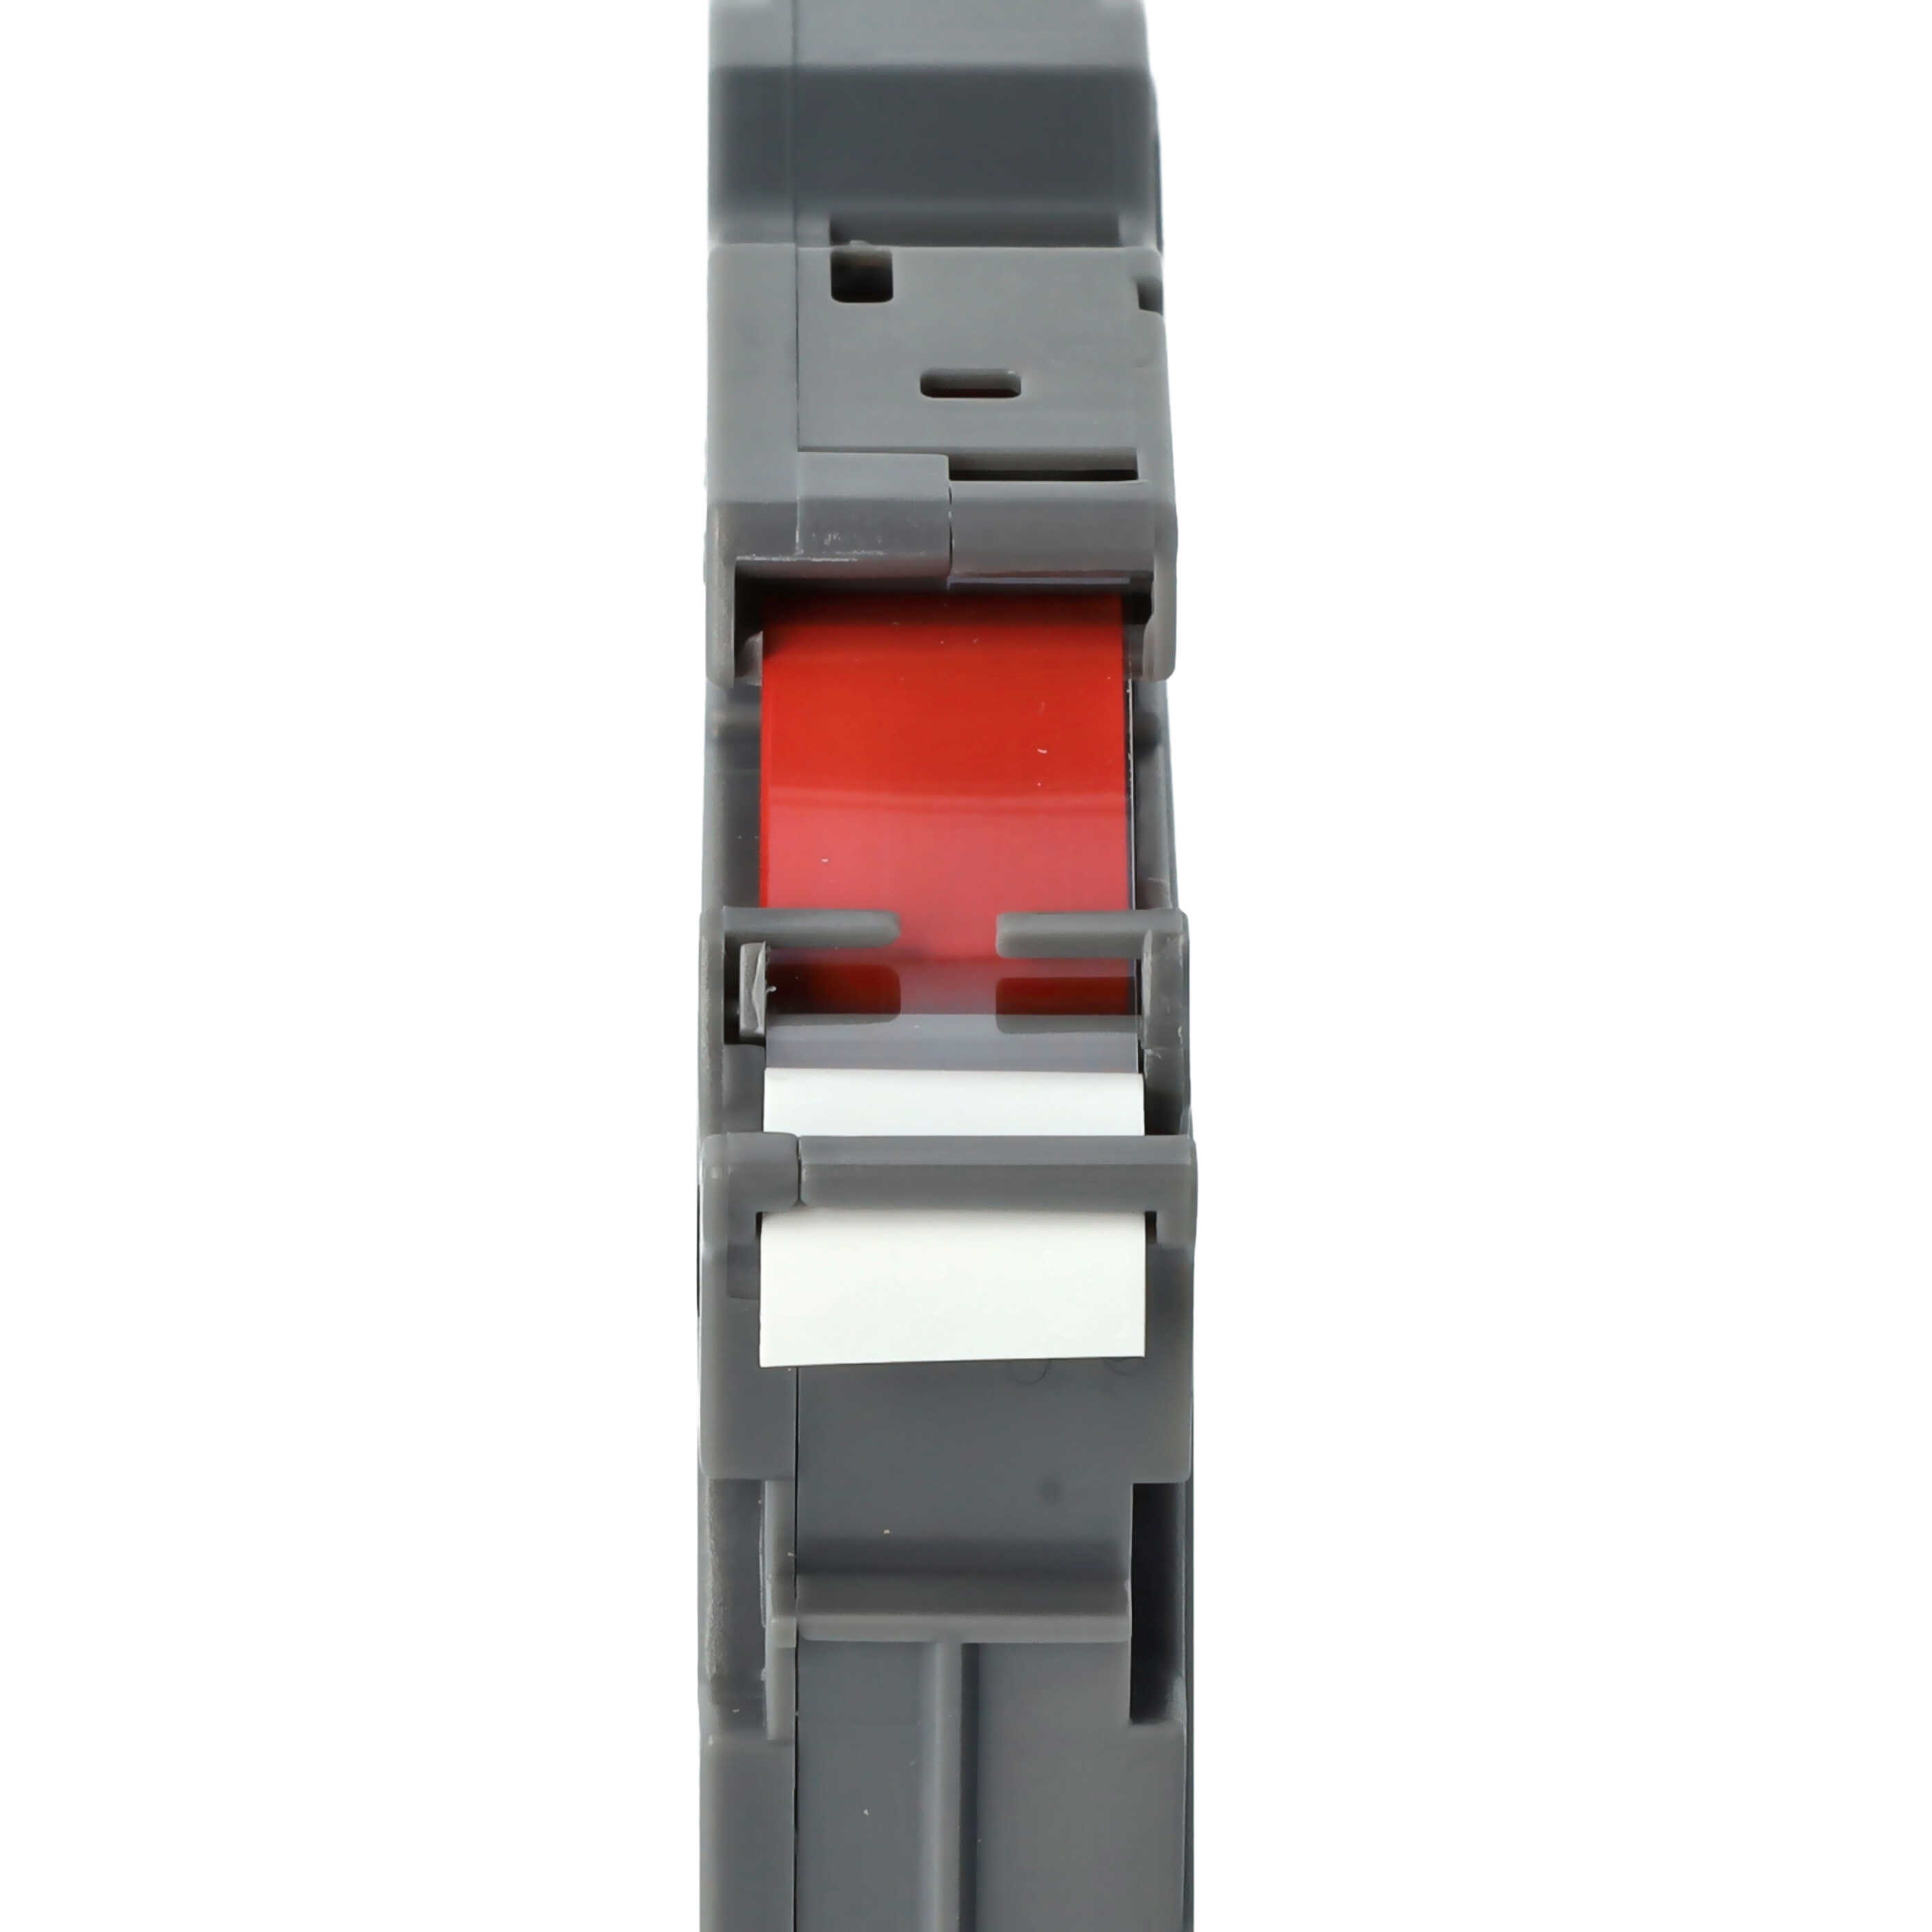 Casete cinta escritura reemplaza Brother TZ-232, TZE-232 Rojo su Blanco